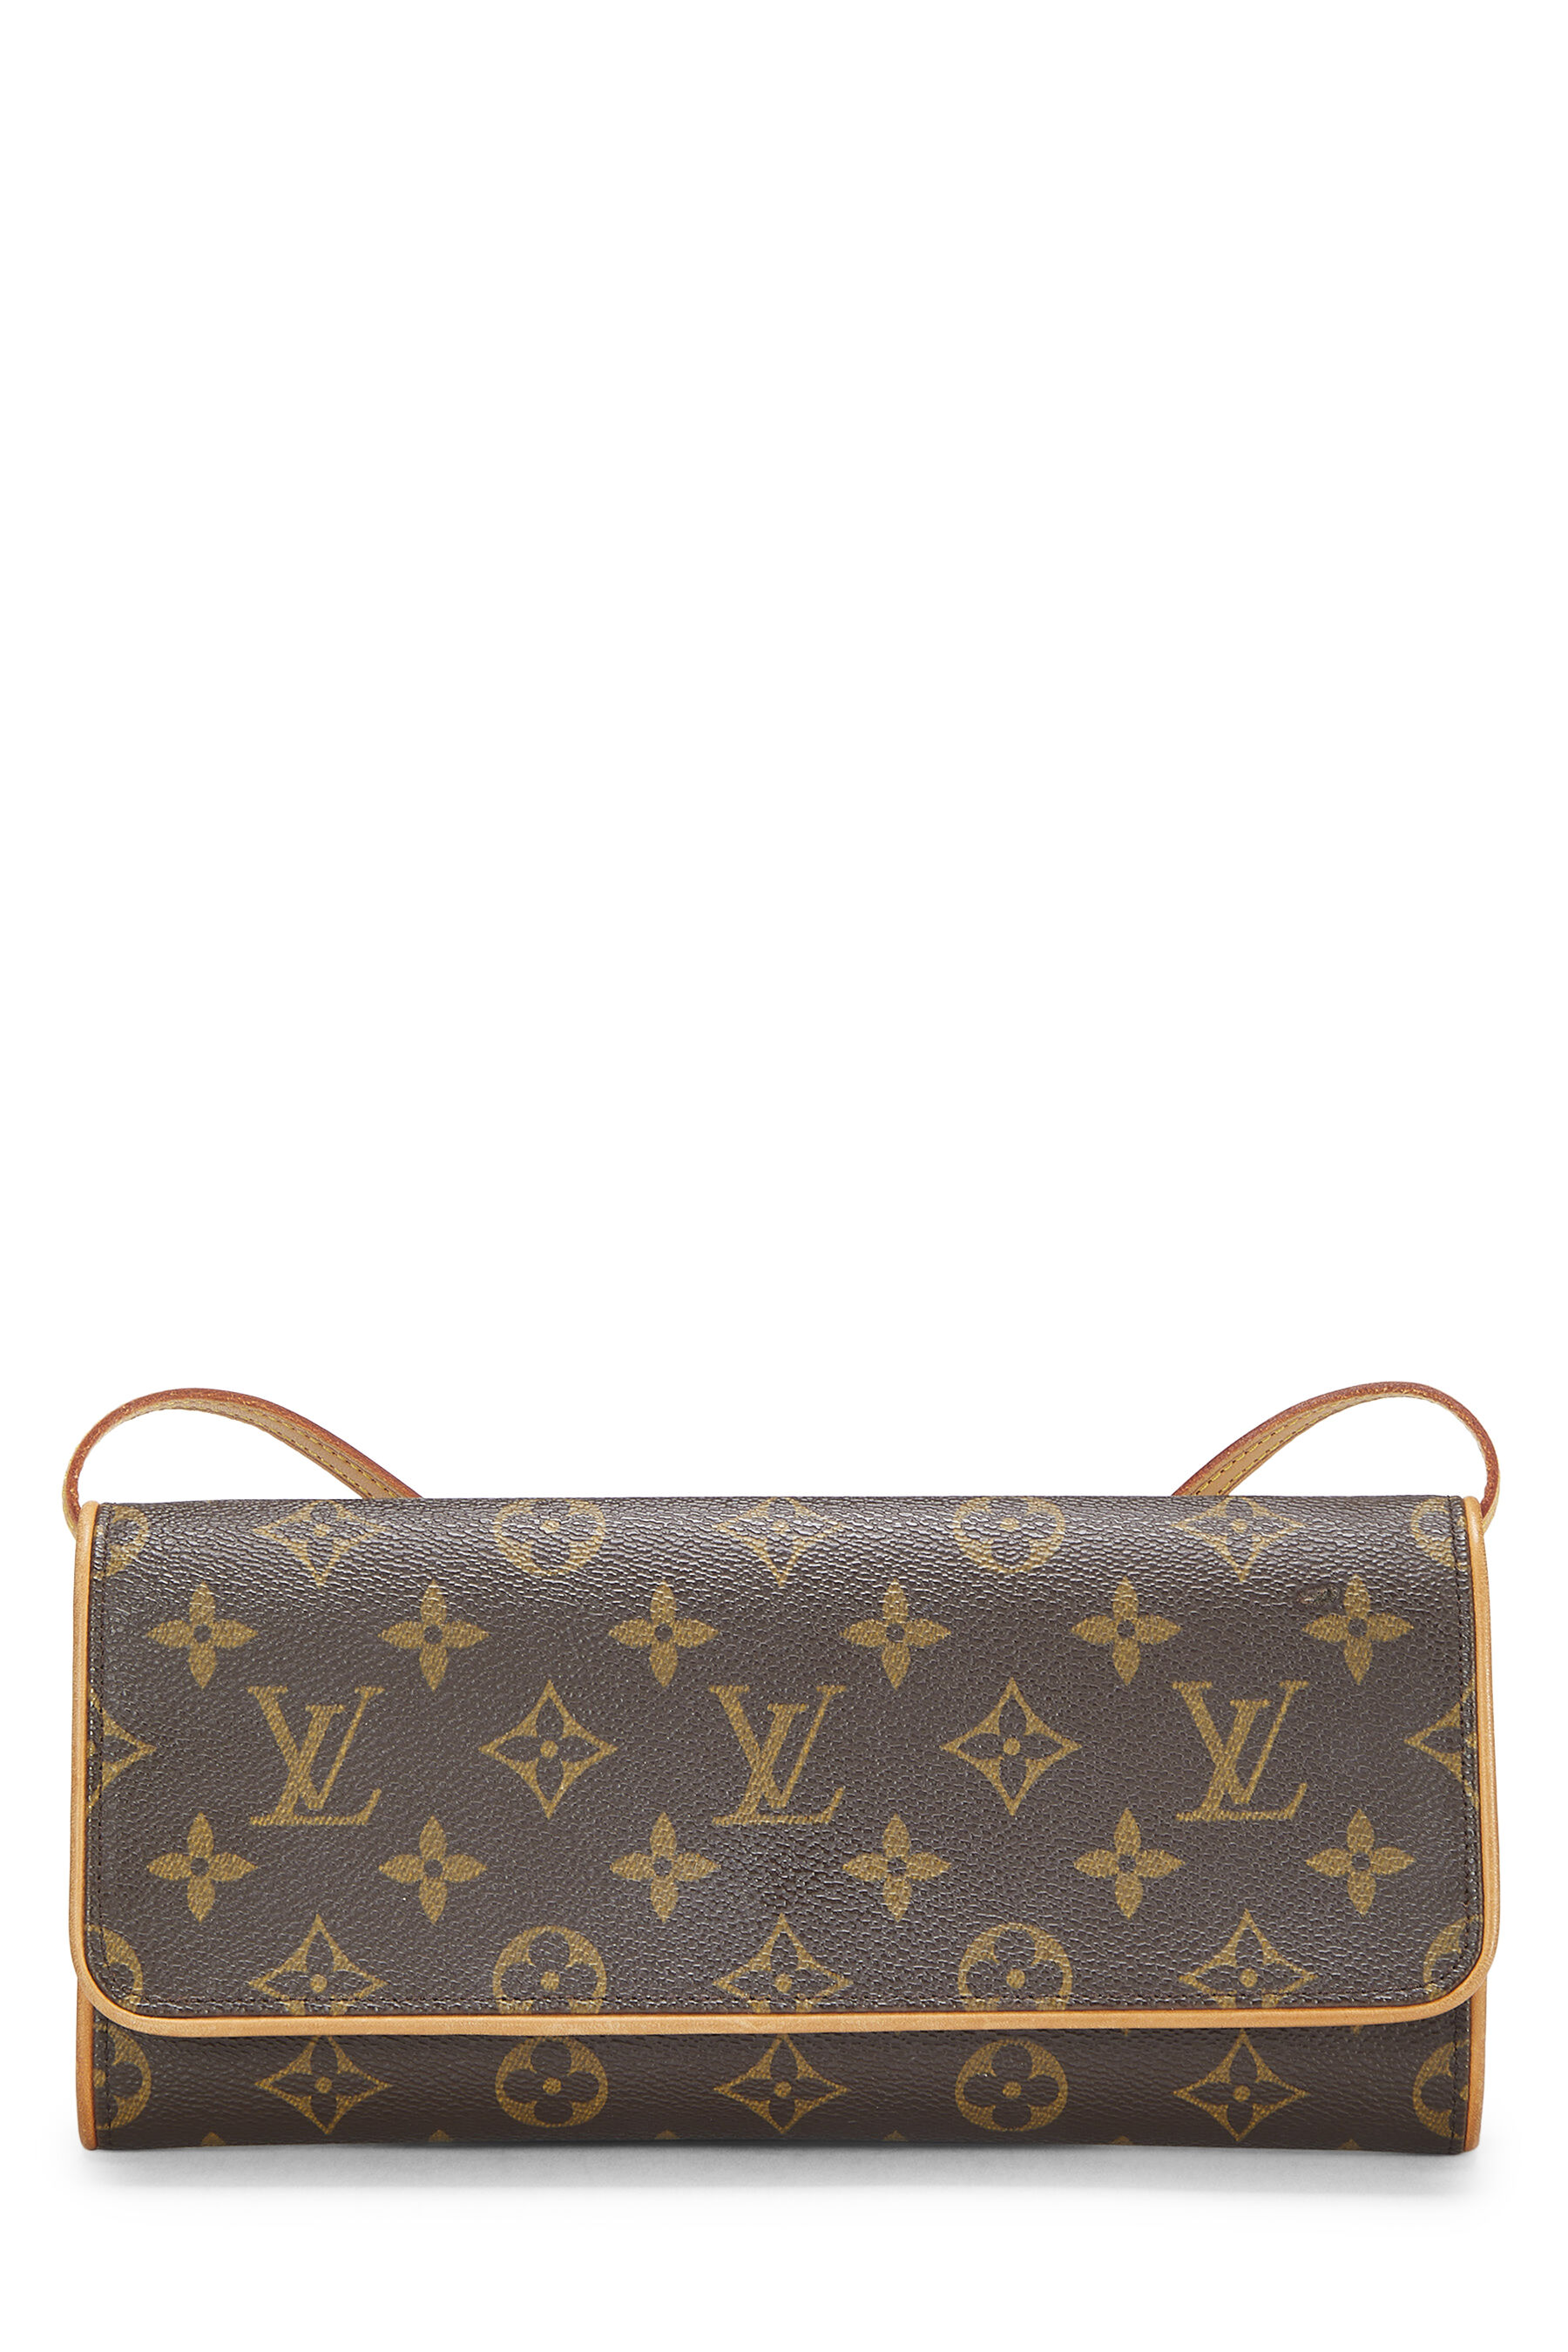 Louis Vuitton twin Pochette shoulder bag – JOY'S CLASSY COLLECTION